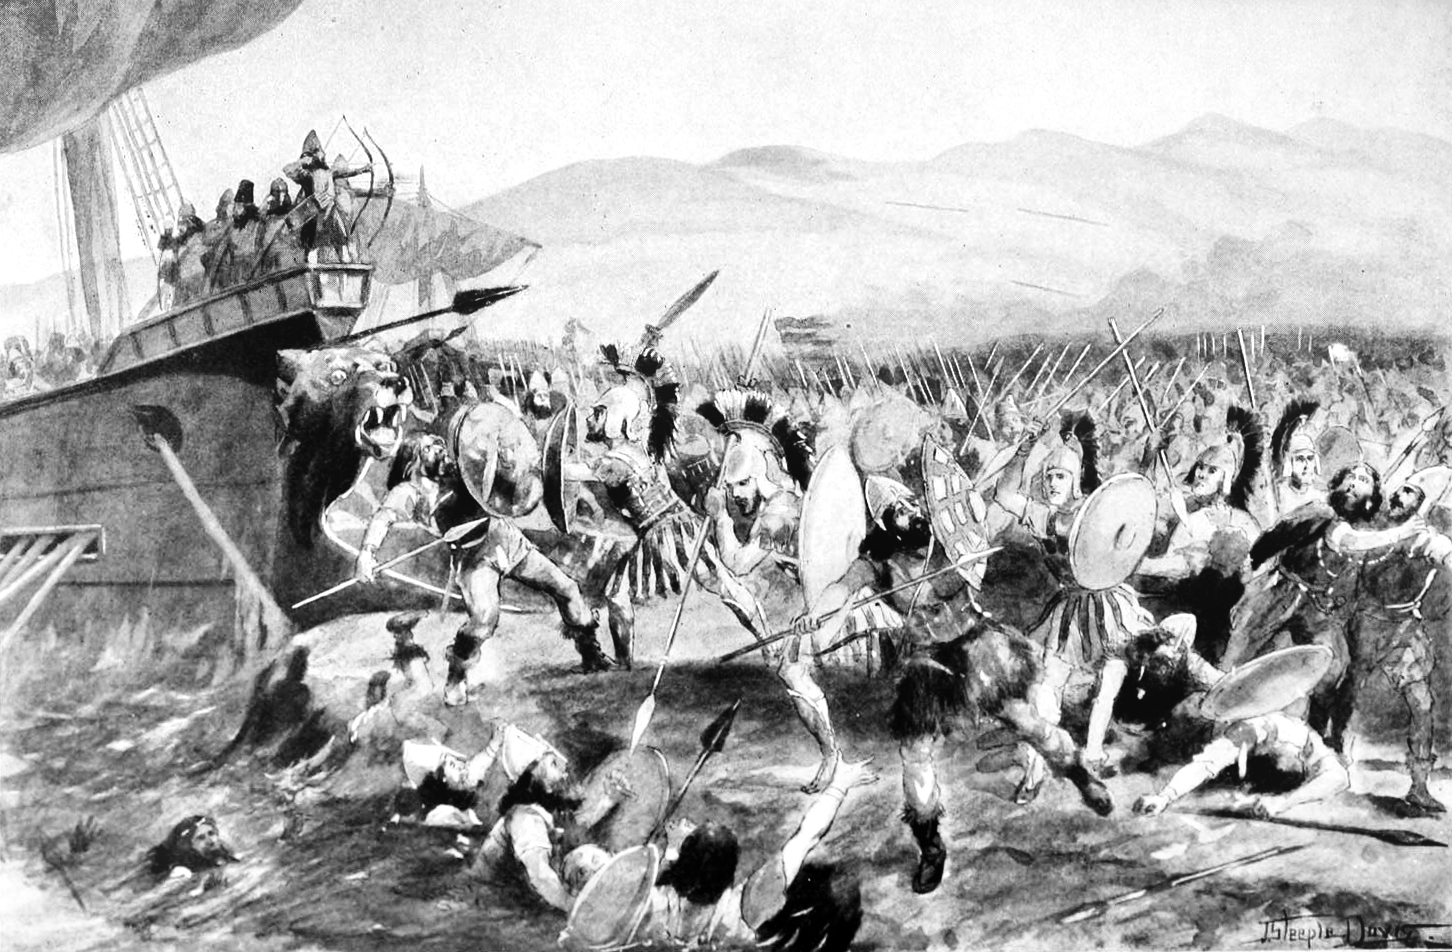 Slaget ved Marathon: De græsk-persiske krige rykker frem mod Athen